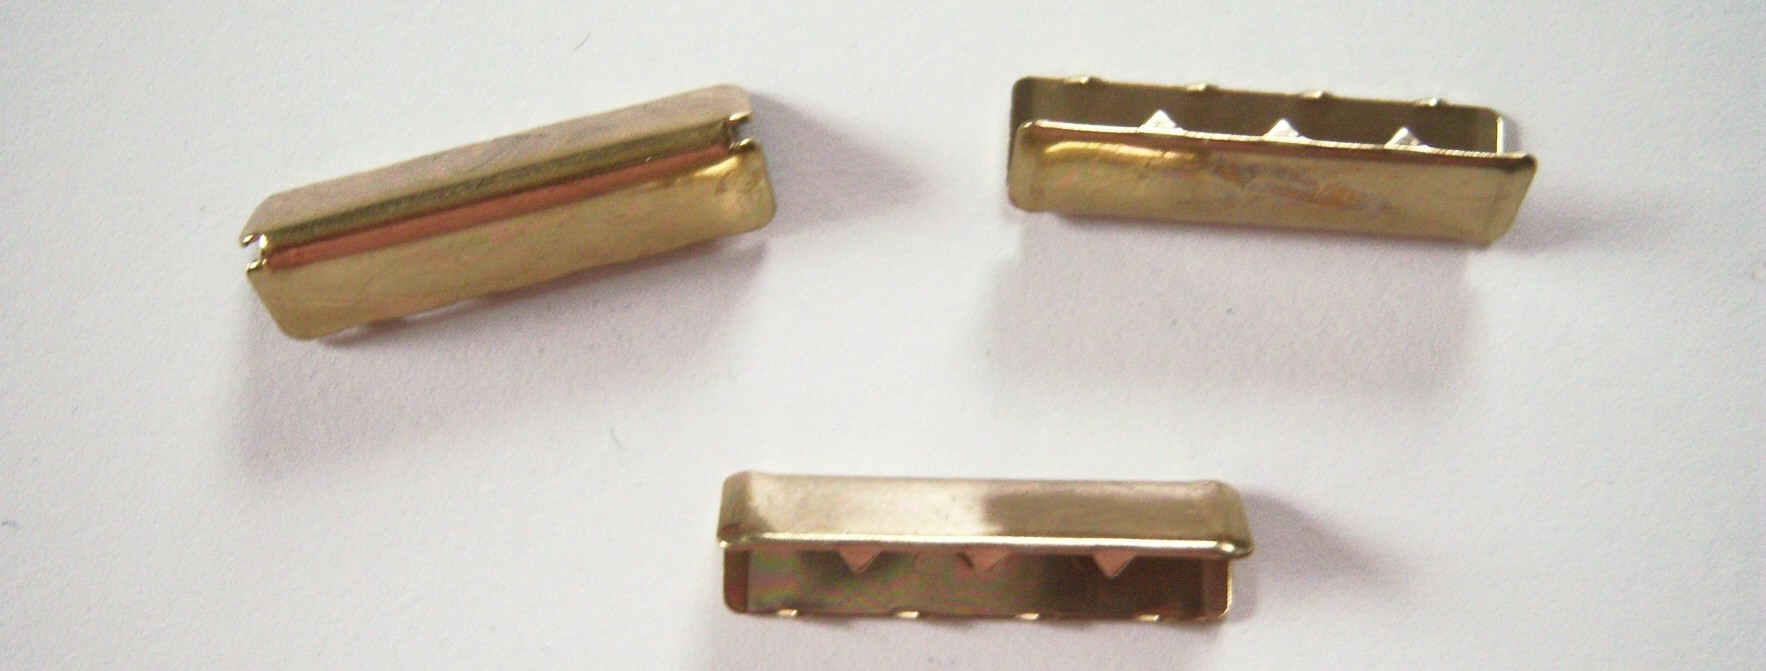 Gold Metal 1" Belt End Grip